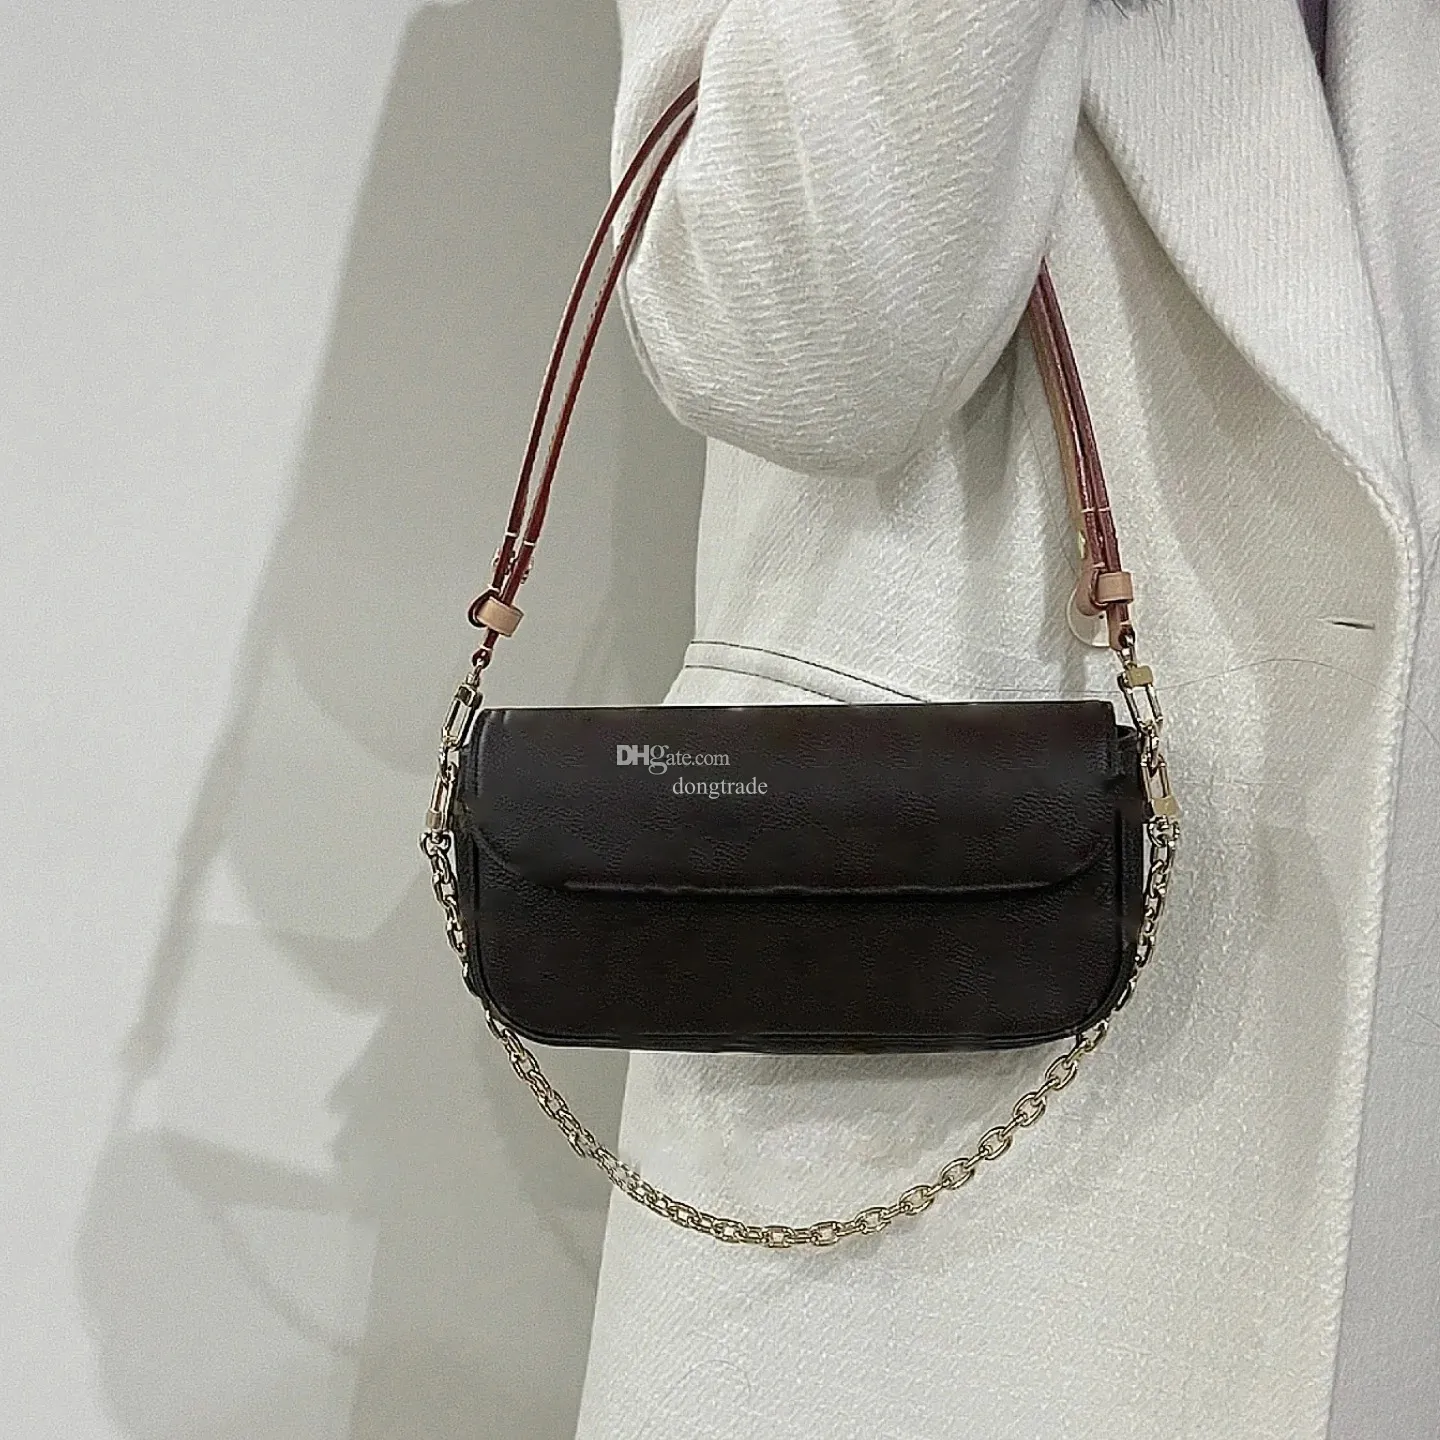 Bolsa designer sacos de ombro bolsa de luxo das mulheres bolsas moda requintado namorada presente clássico compras crossbody